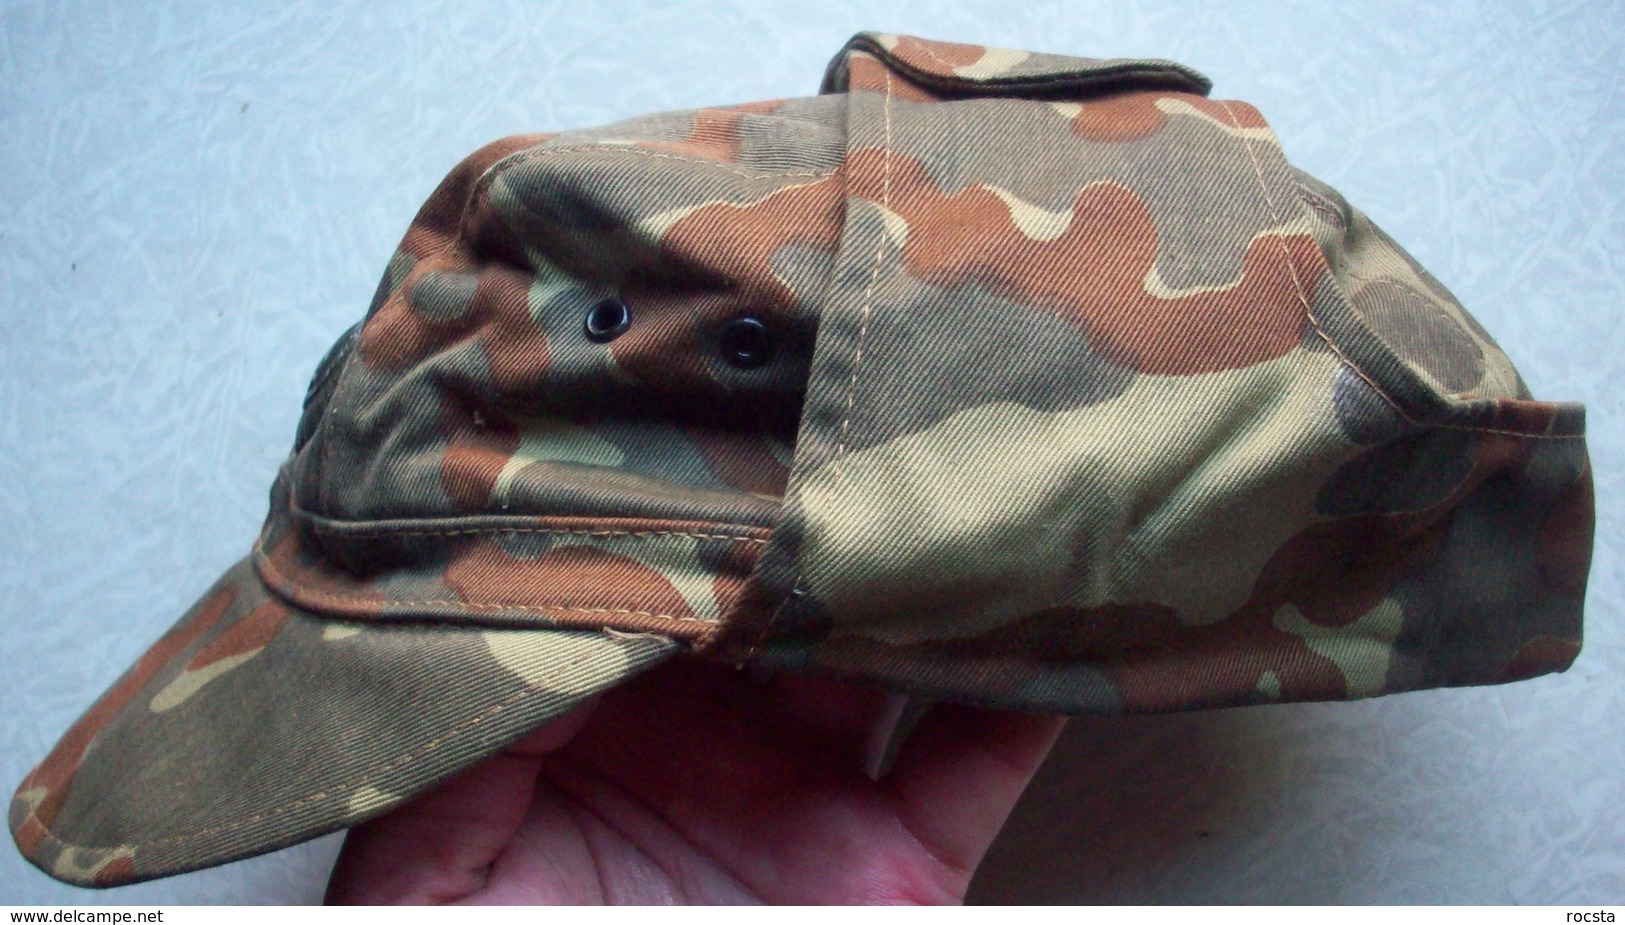 Ukrainian Army Ensign Camouflage Uniform Set (cap, Jacket, Pants) ATO - Size 46 - Uniforms